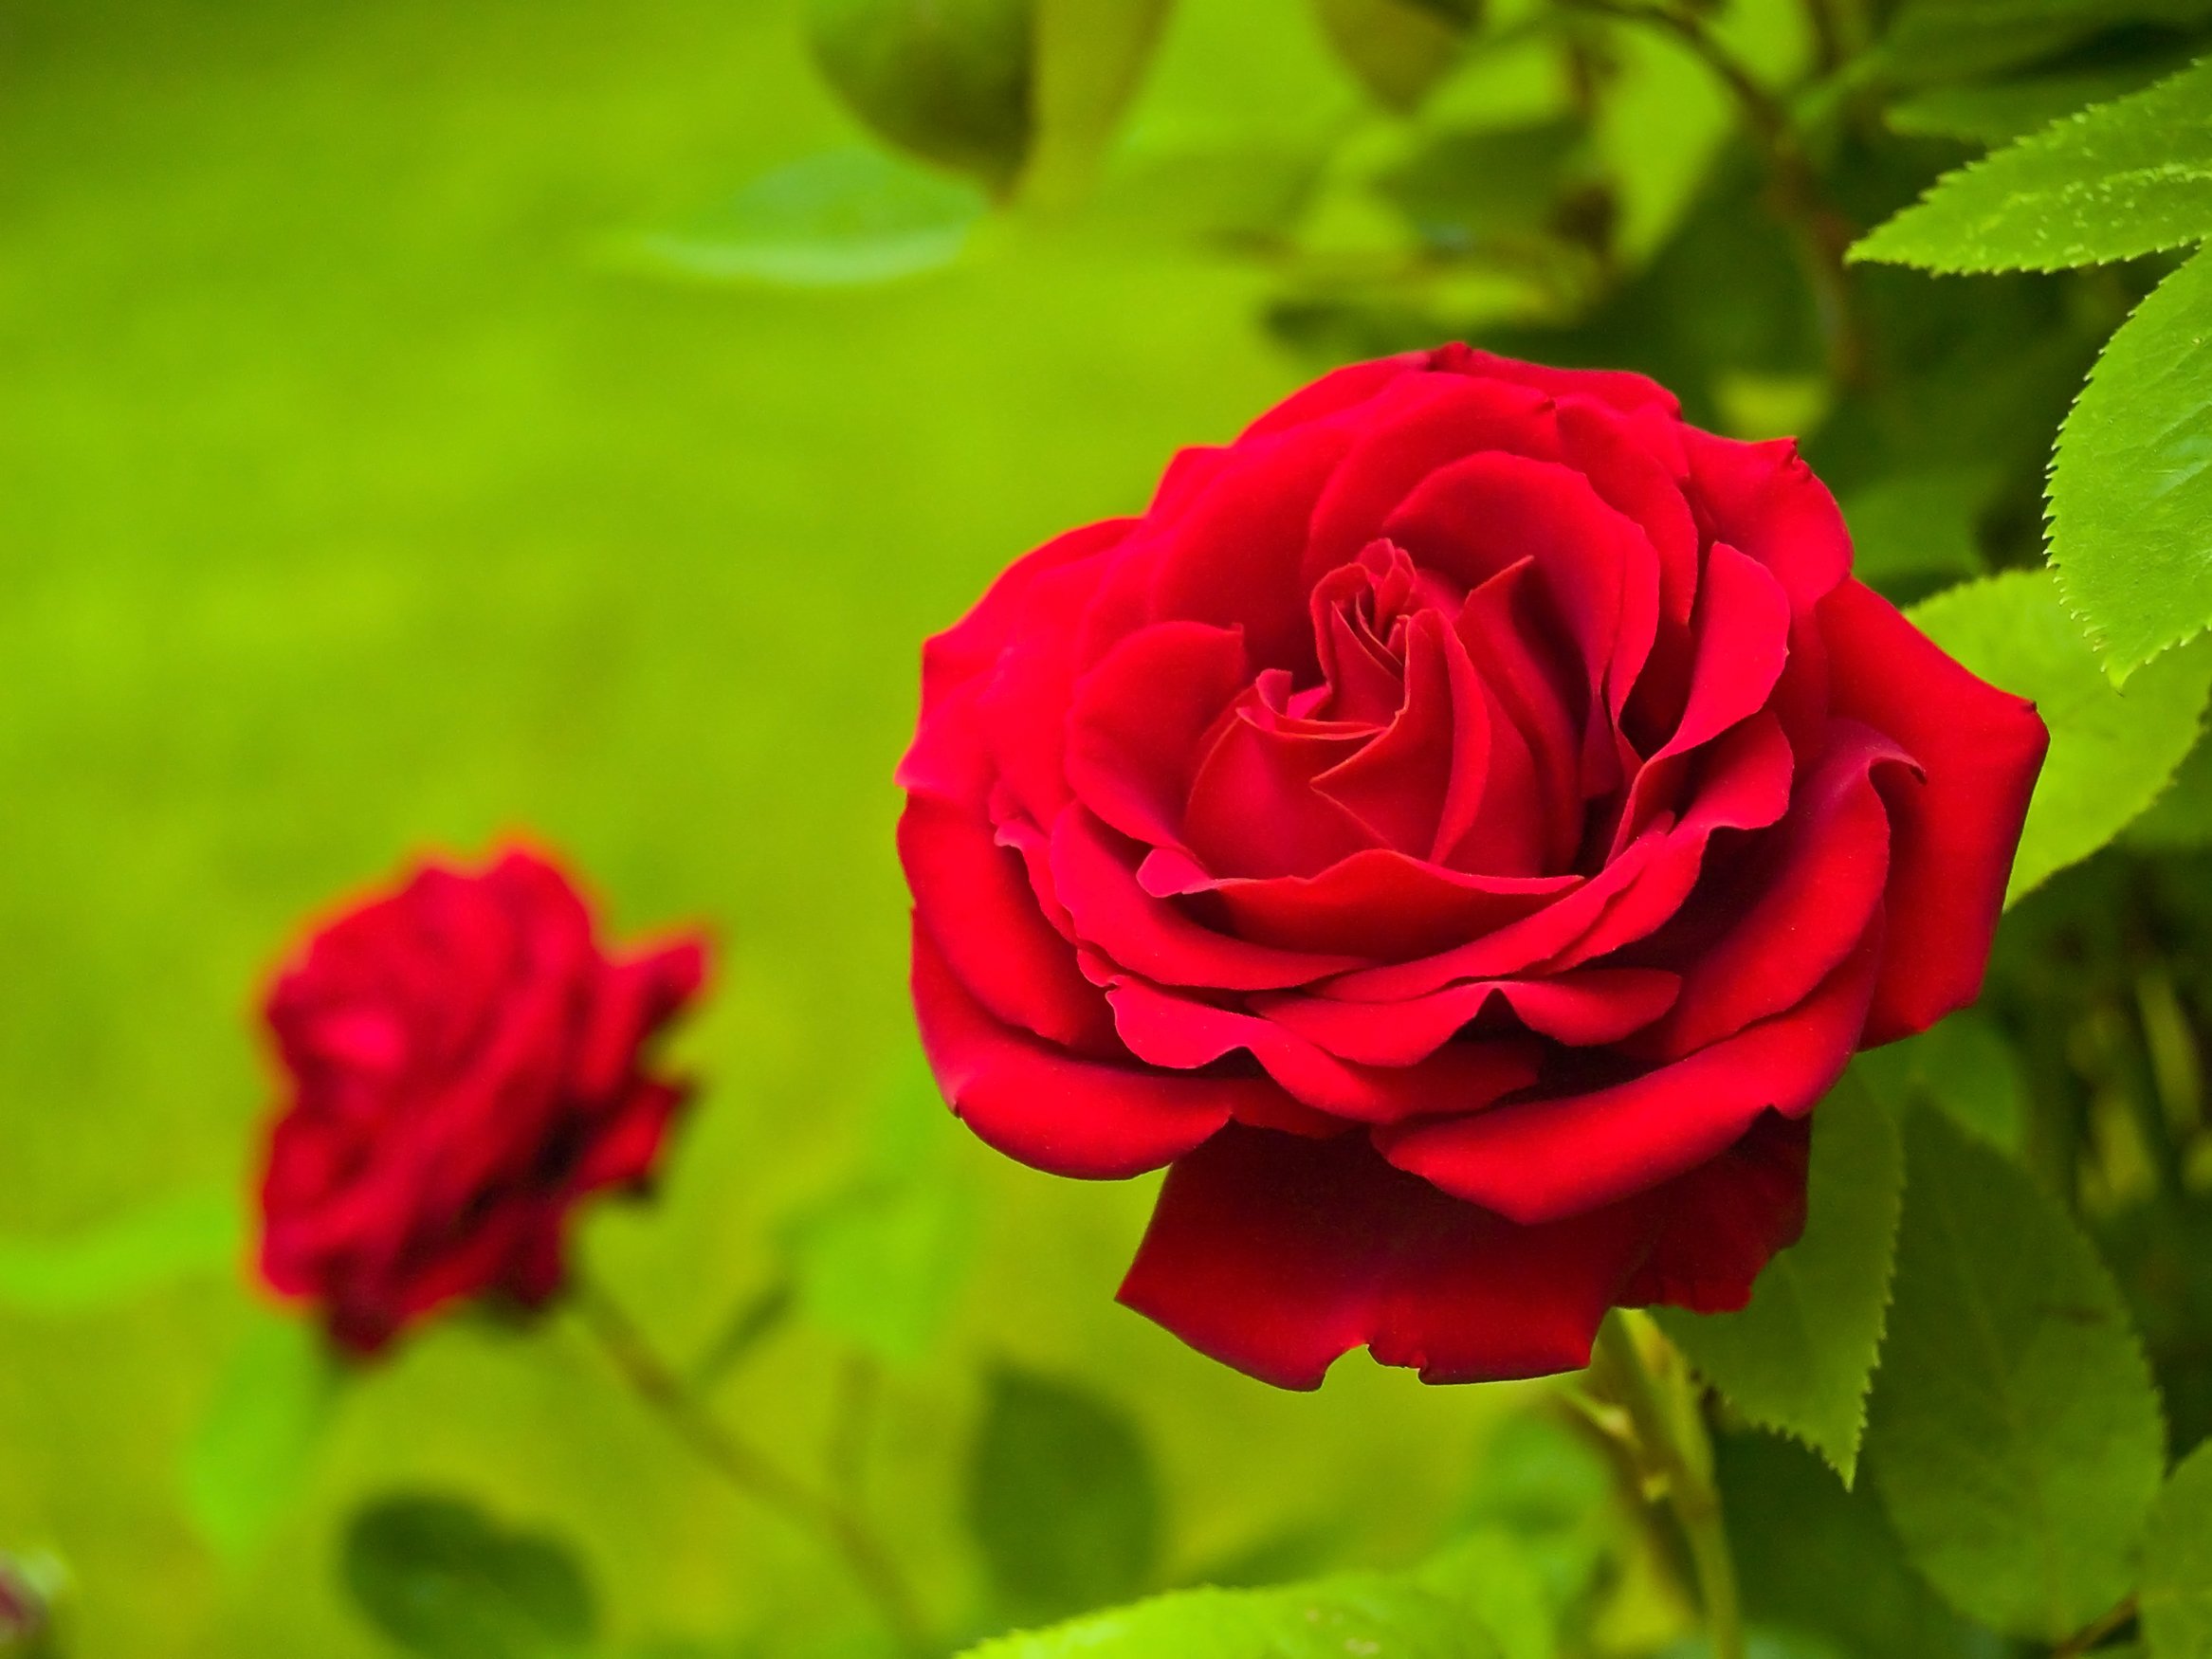 National flower of Ecuador - Rose